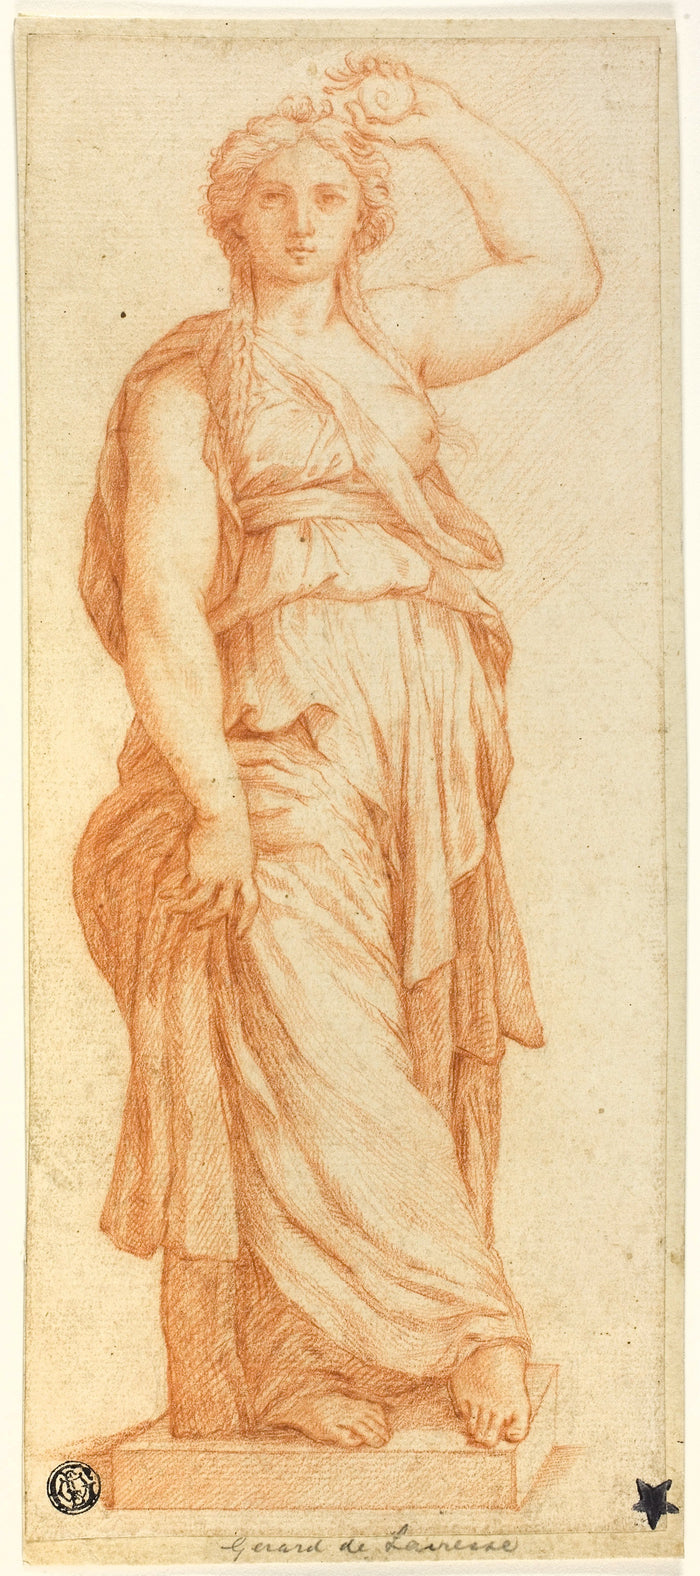 Female Caryatid: After Pietro Buonaccorsi, called Perino del Vaga,16x12